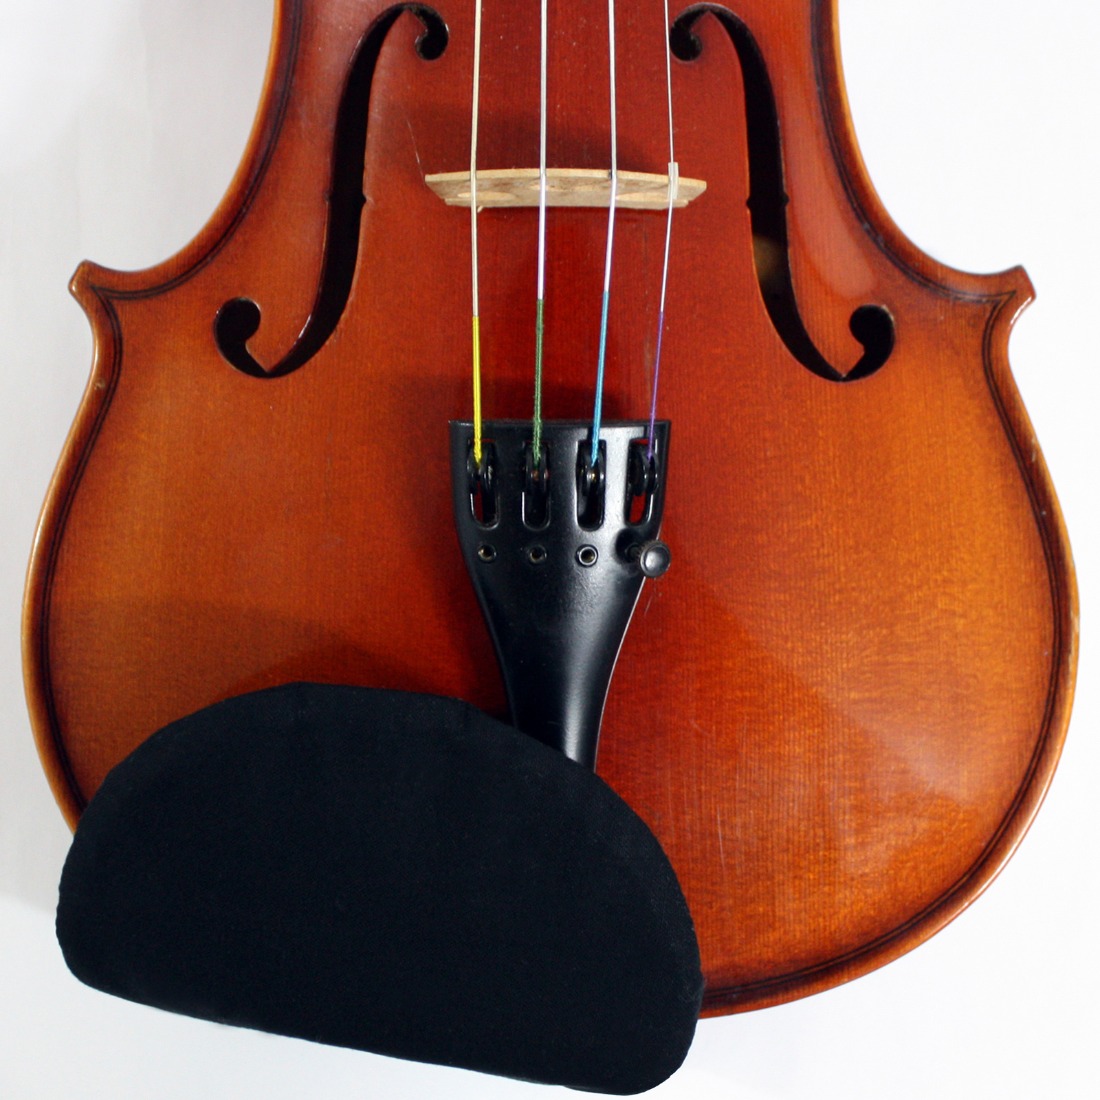 바이올린 턱받침 커버 센터형 Cno6